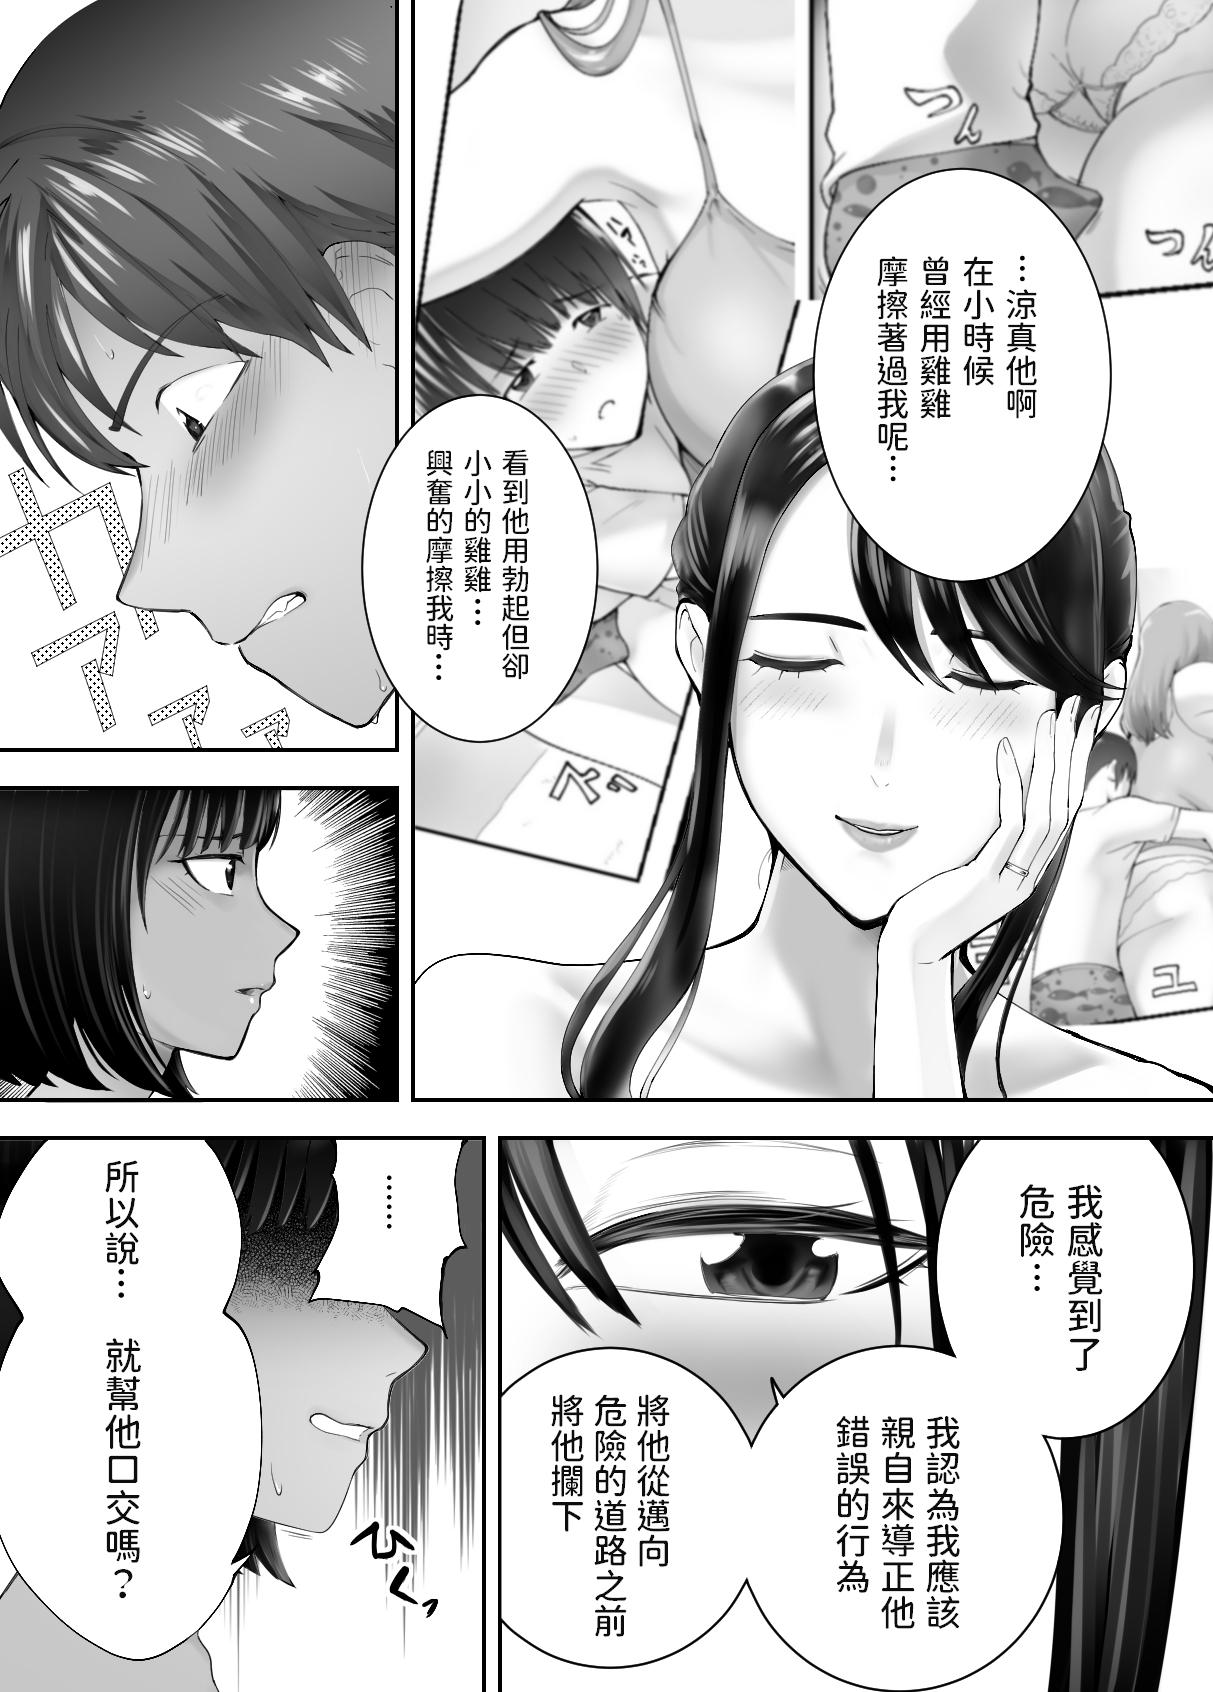 Balls Osananajimi ga Mama to Yatte imasu. 7 - Original Oldman - Page 6